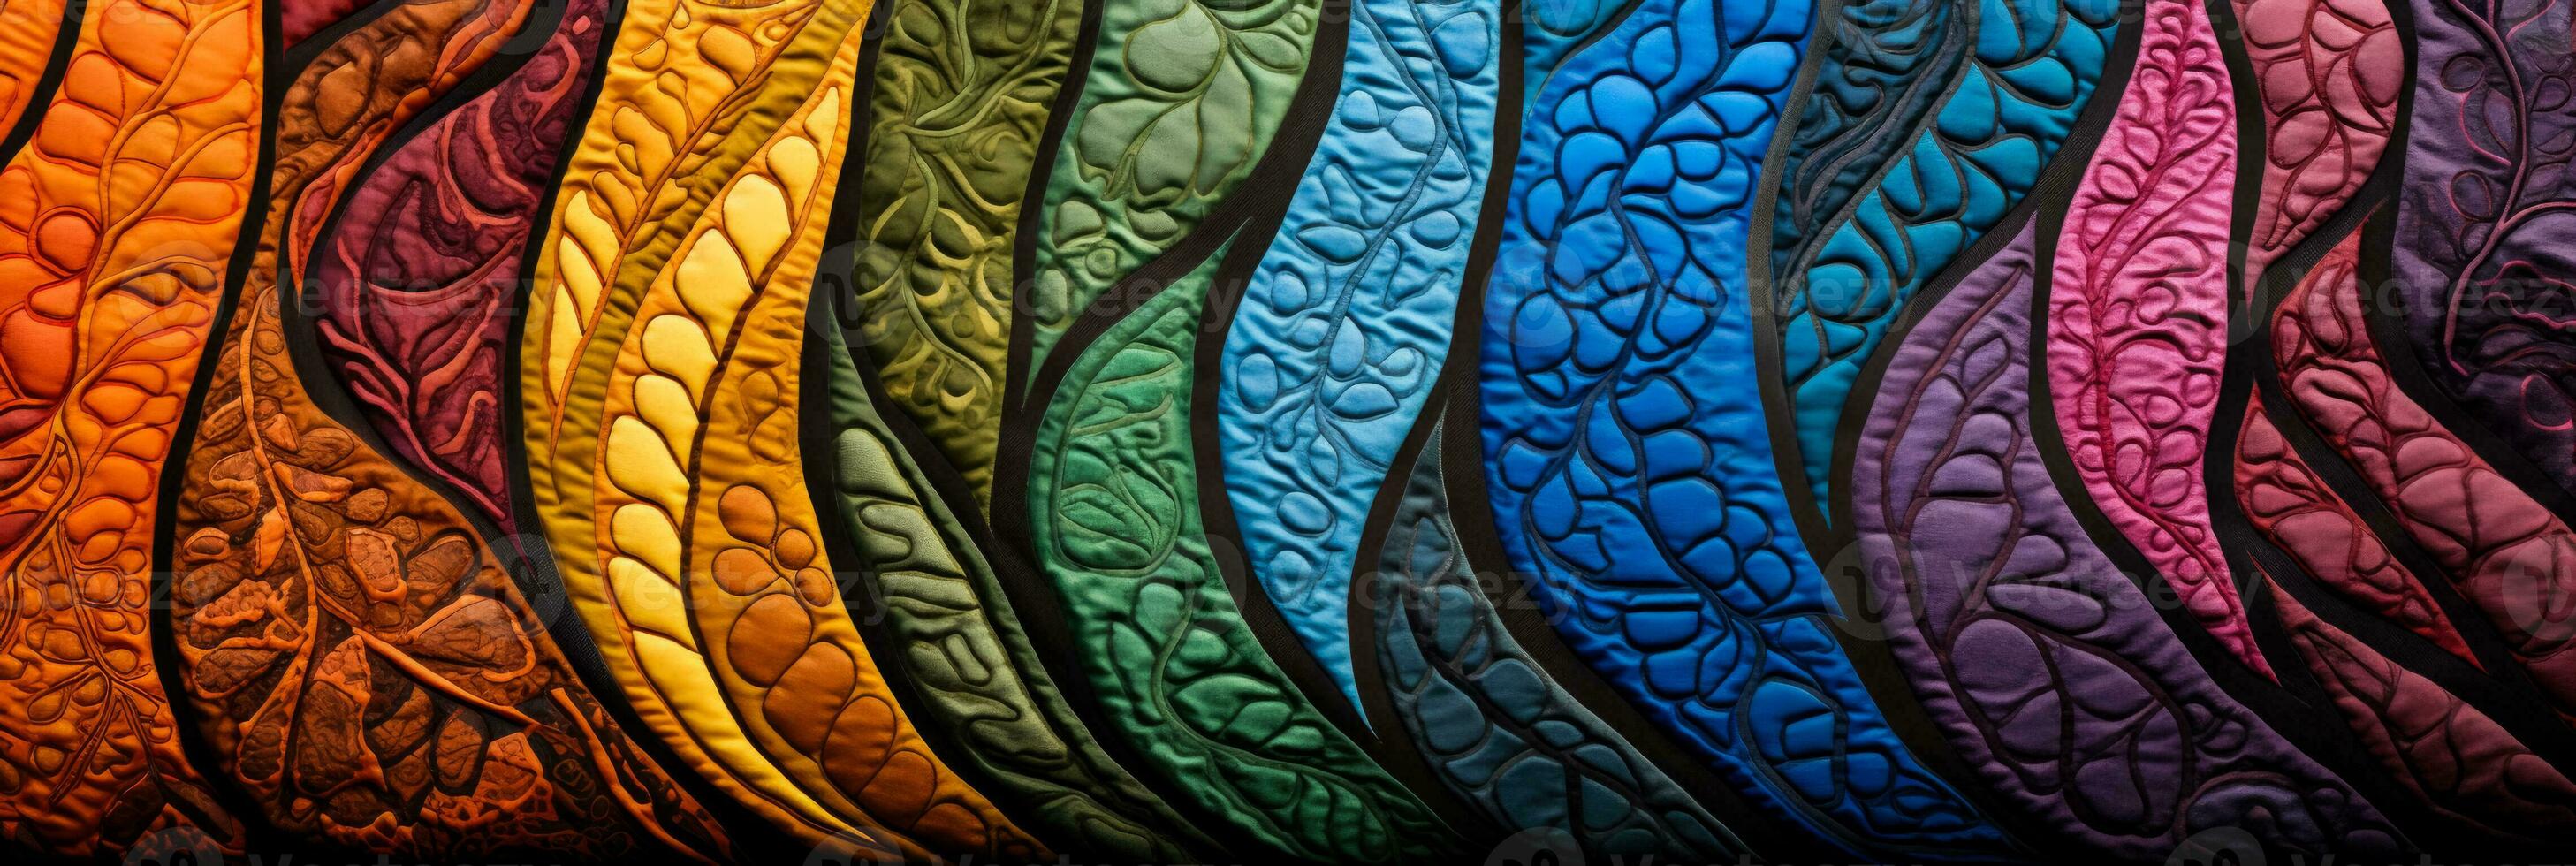 hand dragen batik tyg texturer fångande organisk symmetri och vibrerande färga detaljer foto